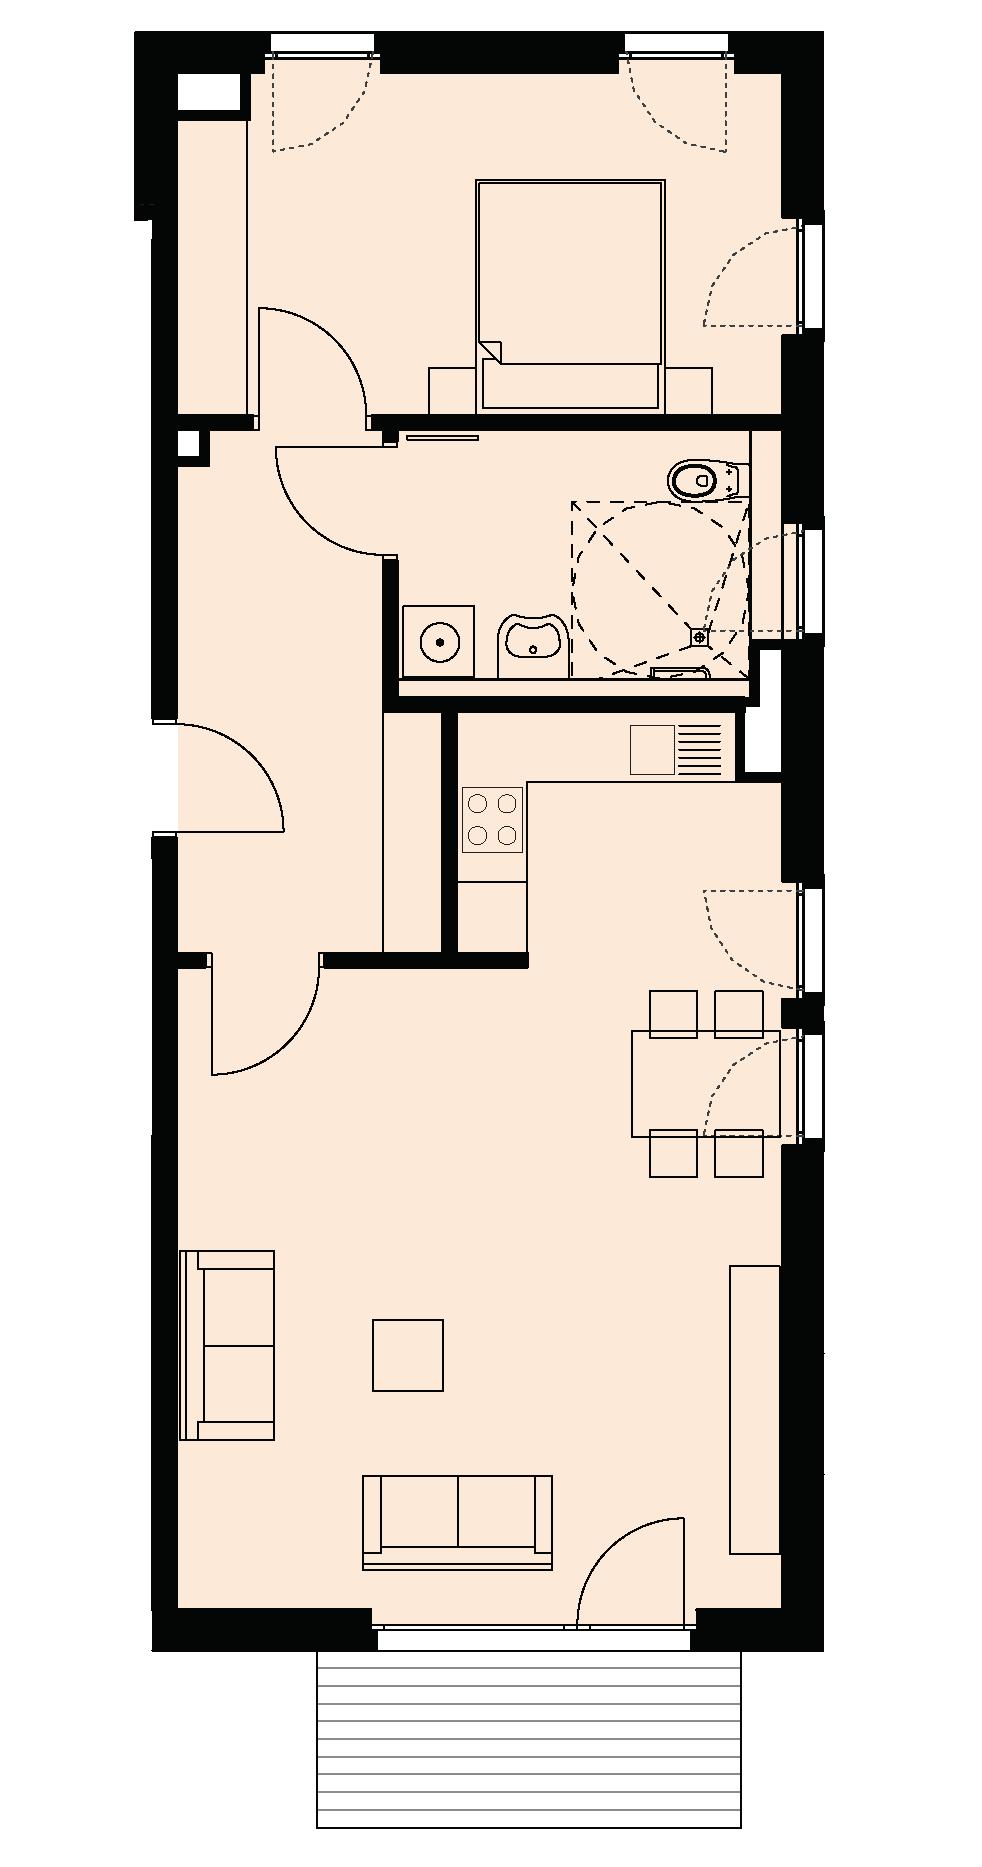 PV / WOHNUNGSTYP 1 Wohnungstyp 1 Wohnen / Küche ca. 33,30 m 2 Schlafen ca. 14,50 m 2 Flur ca. 8,80 m 2 Bad ca. 7,20 m 2 Balk./Terr. 50% ca. (5,40 m 2 ) 2,70 m 2 Gesamt ca.